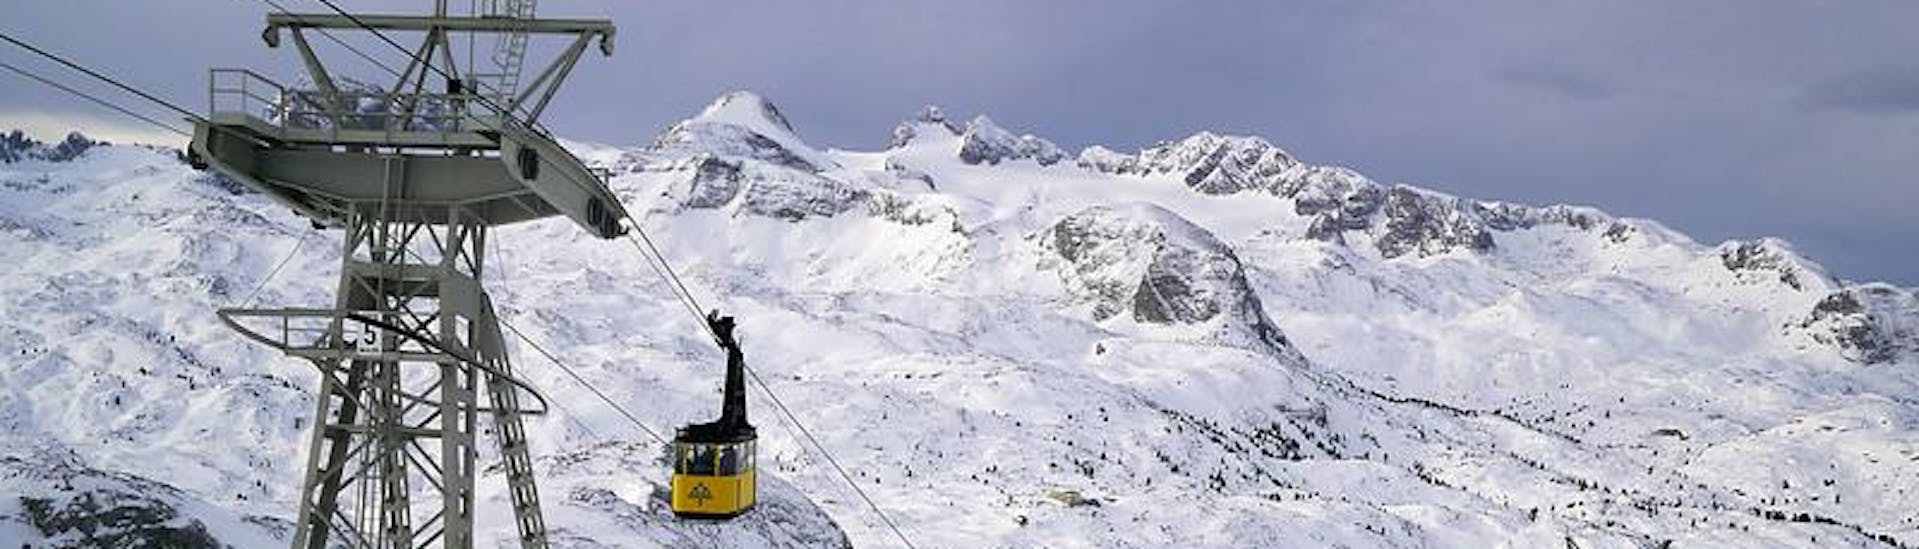 Adultos y niños esquiando en la estación de esquí de Dachstein.